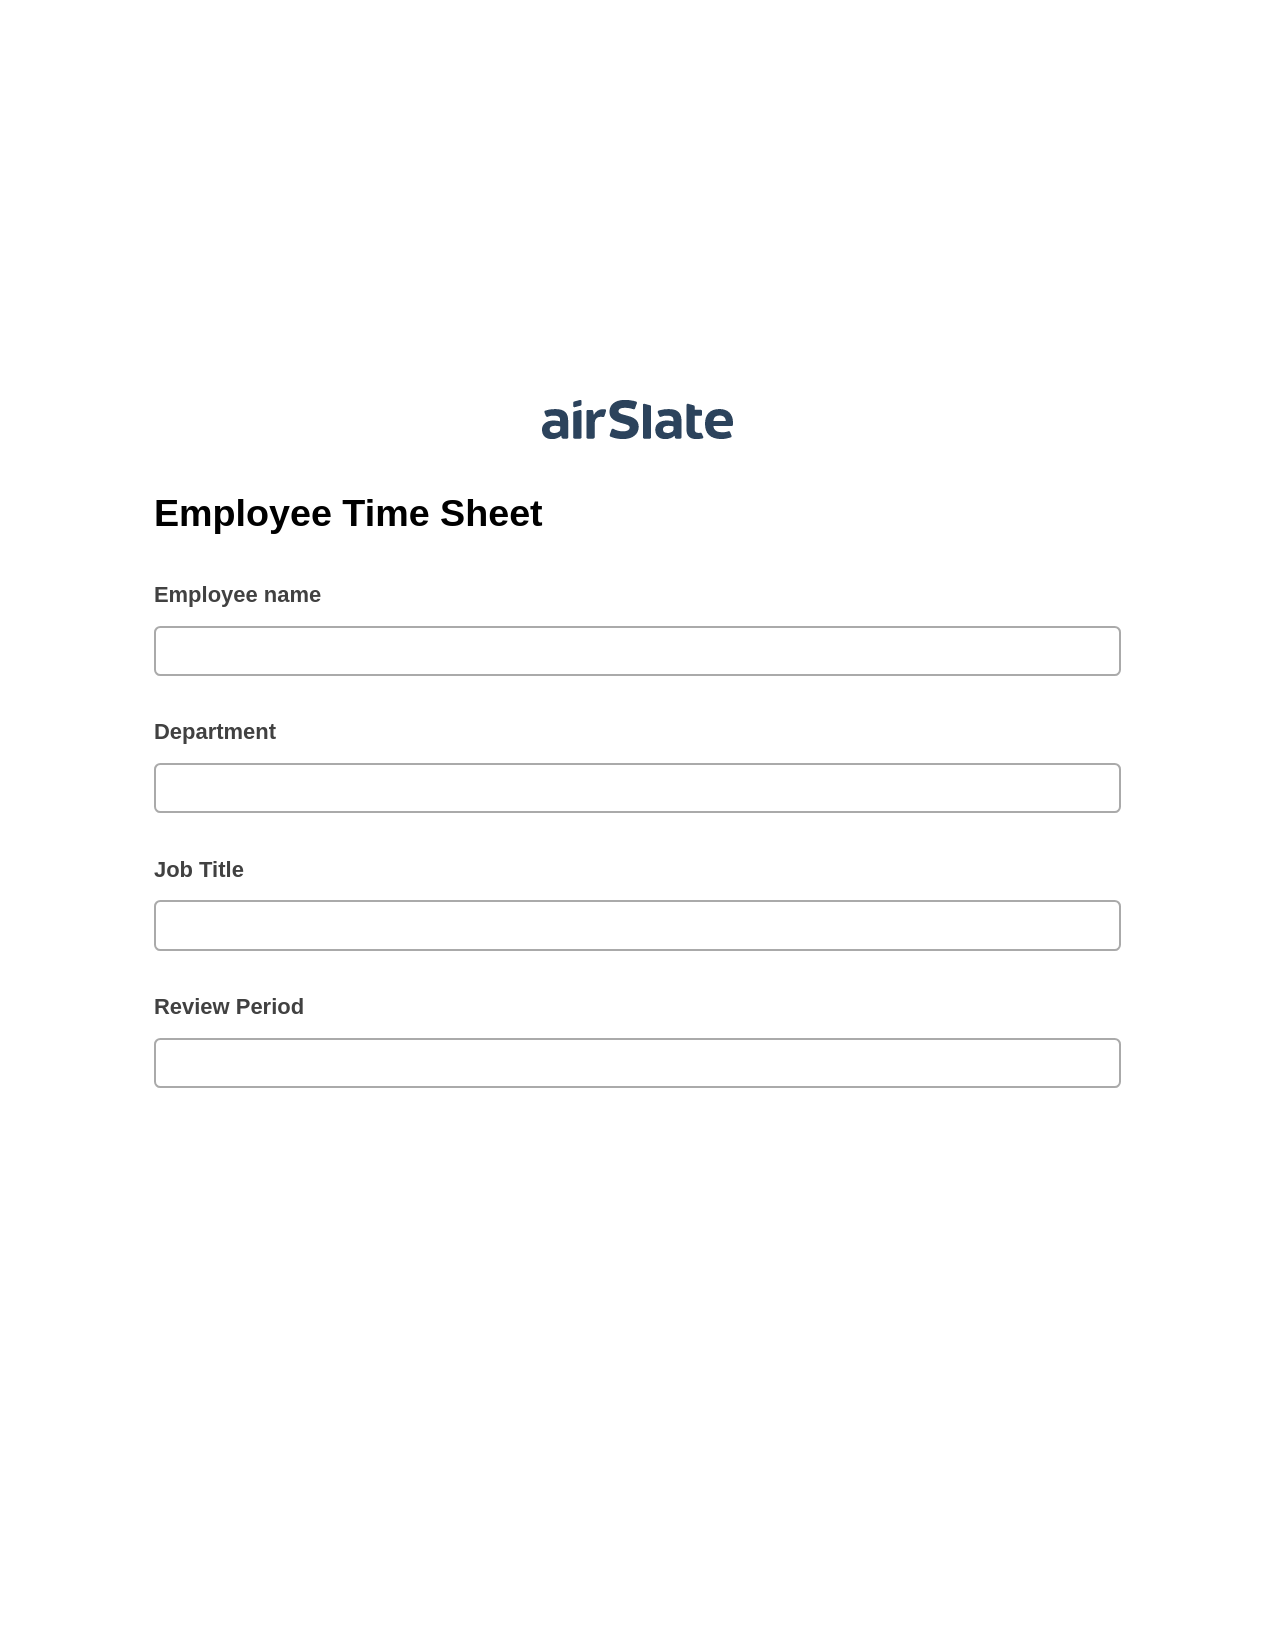 Multirole Employee Time Sheet System Bot - Slack Two-Way Binding Bot, Rename Slate Bot, Export to Excel 365 Bot